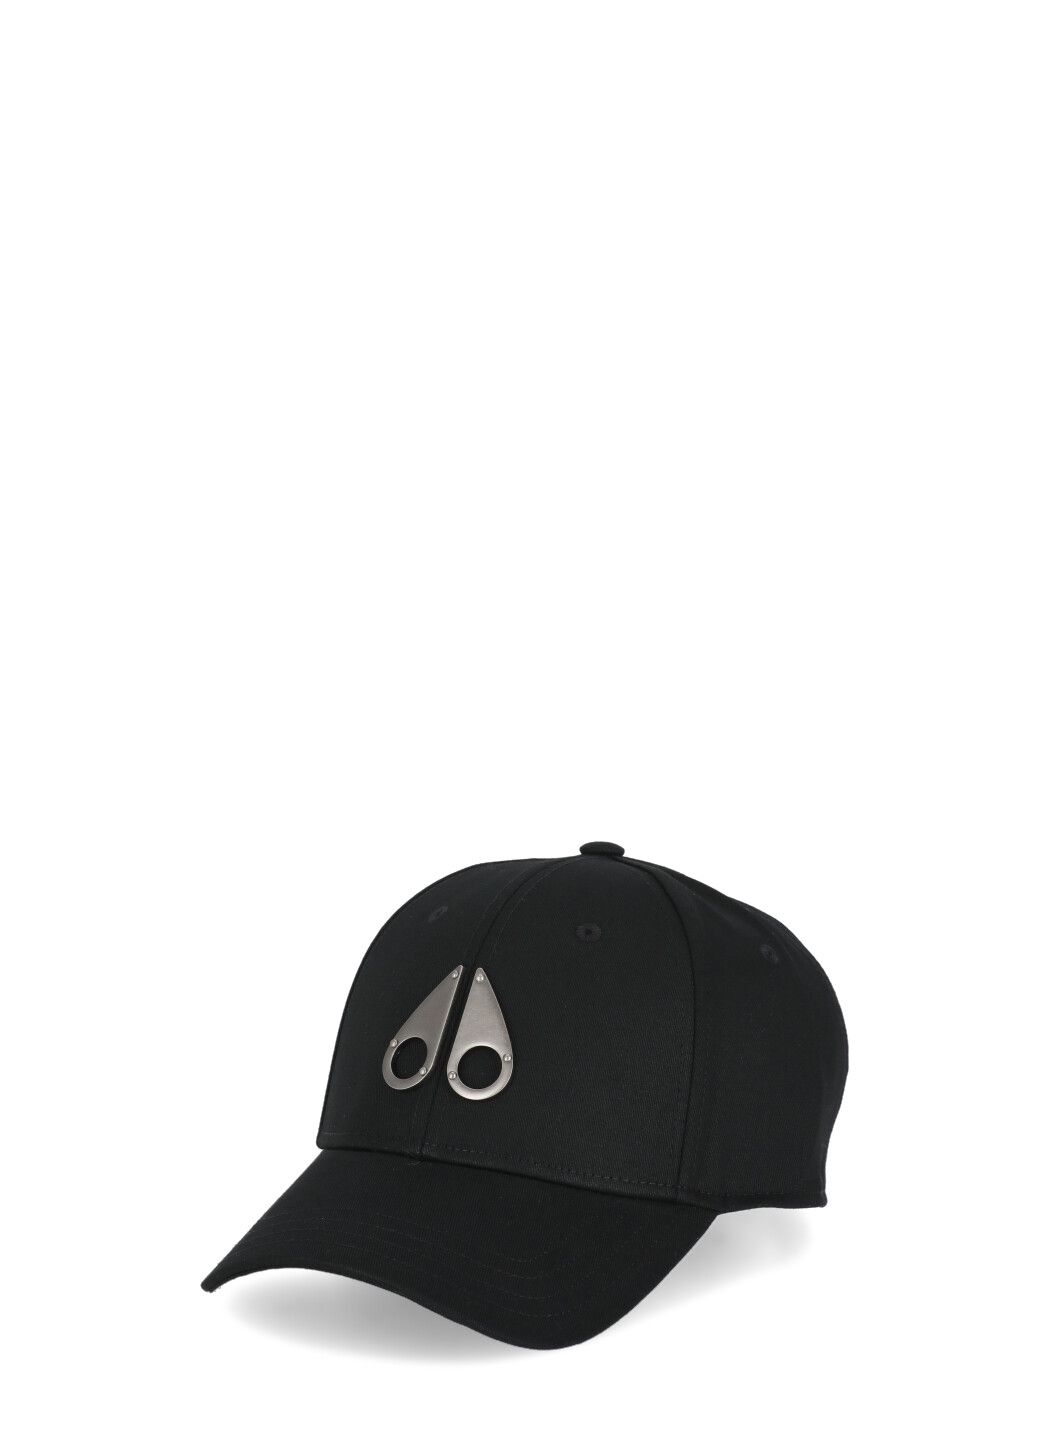 Icon baseball cap